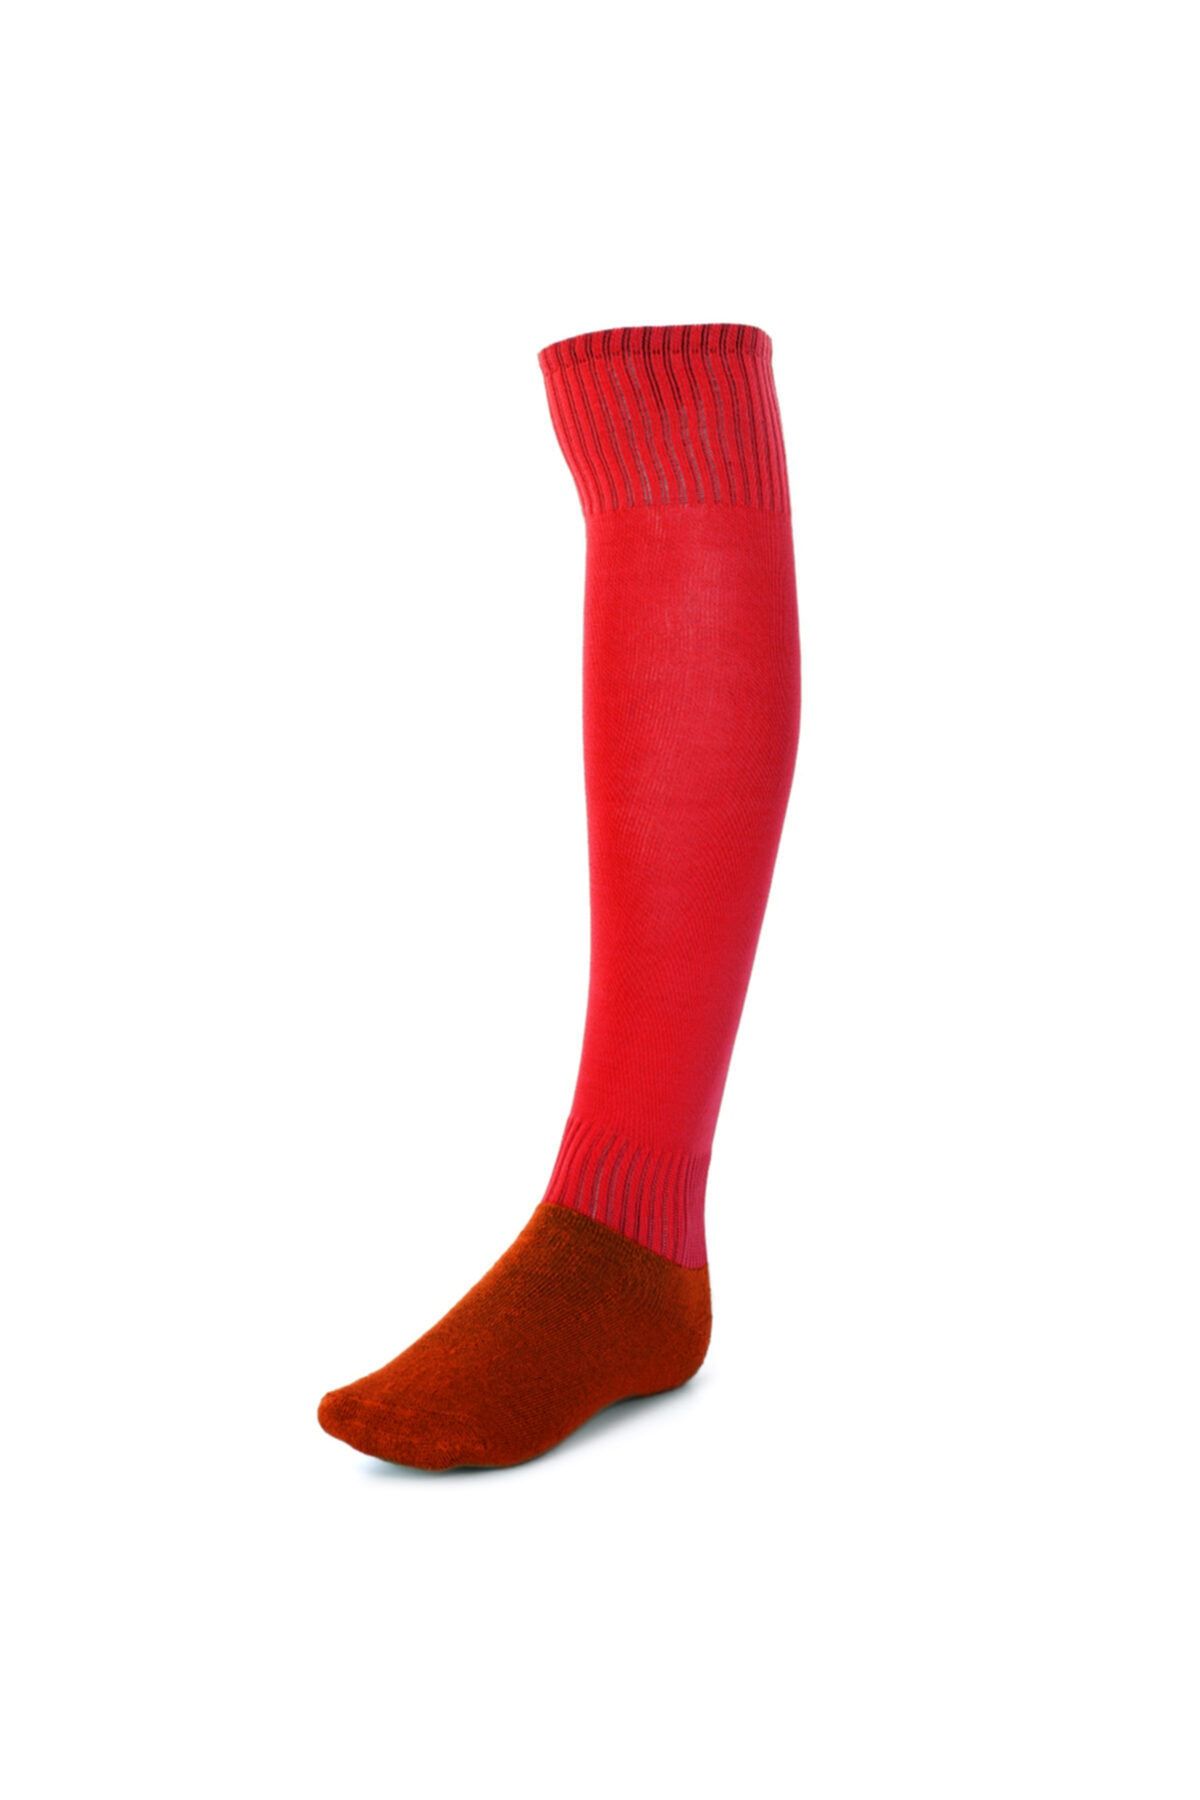 Sportive Uzun Konçlu Erkek Kırmızı Futbol Çorabı 63017kr04